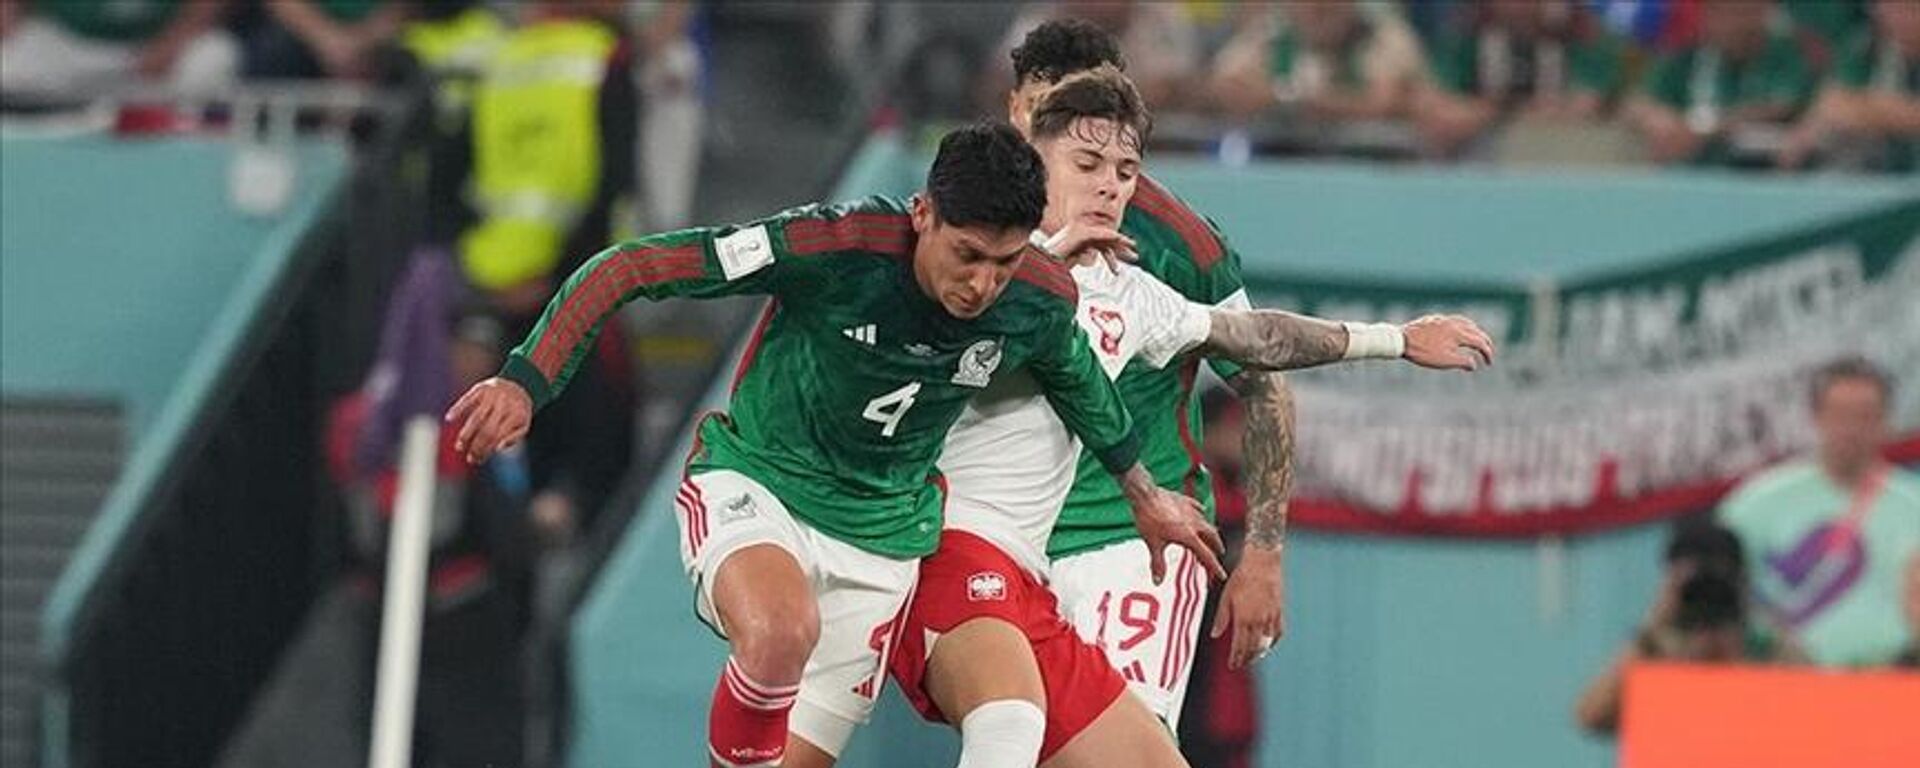 2022 FIFA Dünya Kupası'nda oynanan C Grubu maçında Meksika ile Polonya 0-0 berabere kaldı. - Sputnik Türkiye, 1920, 22.11.2022